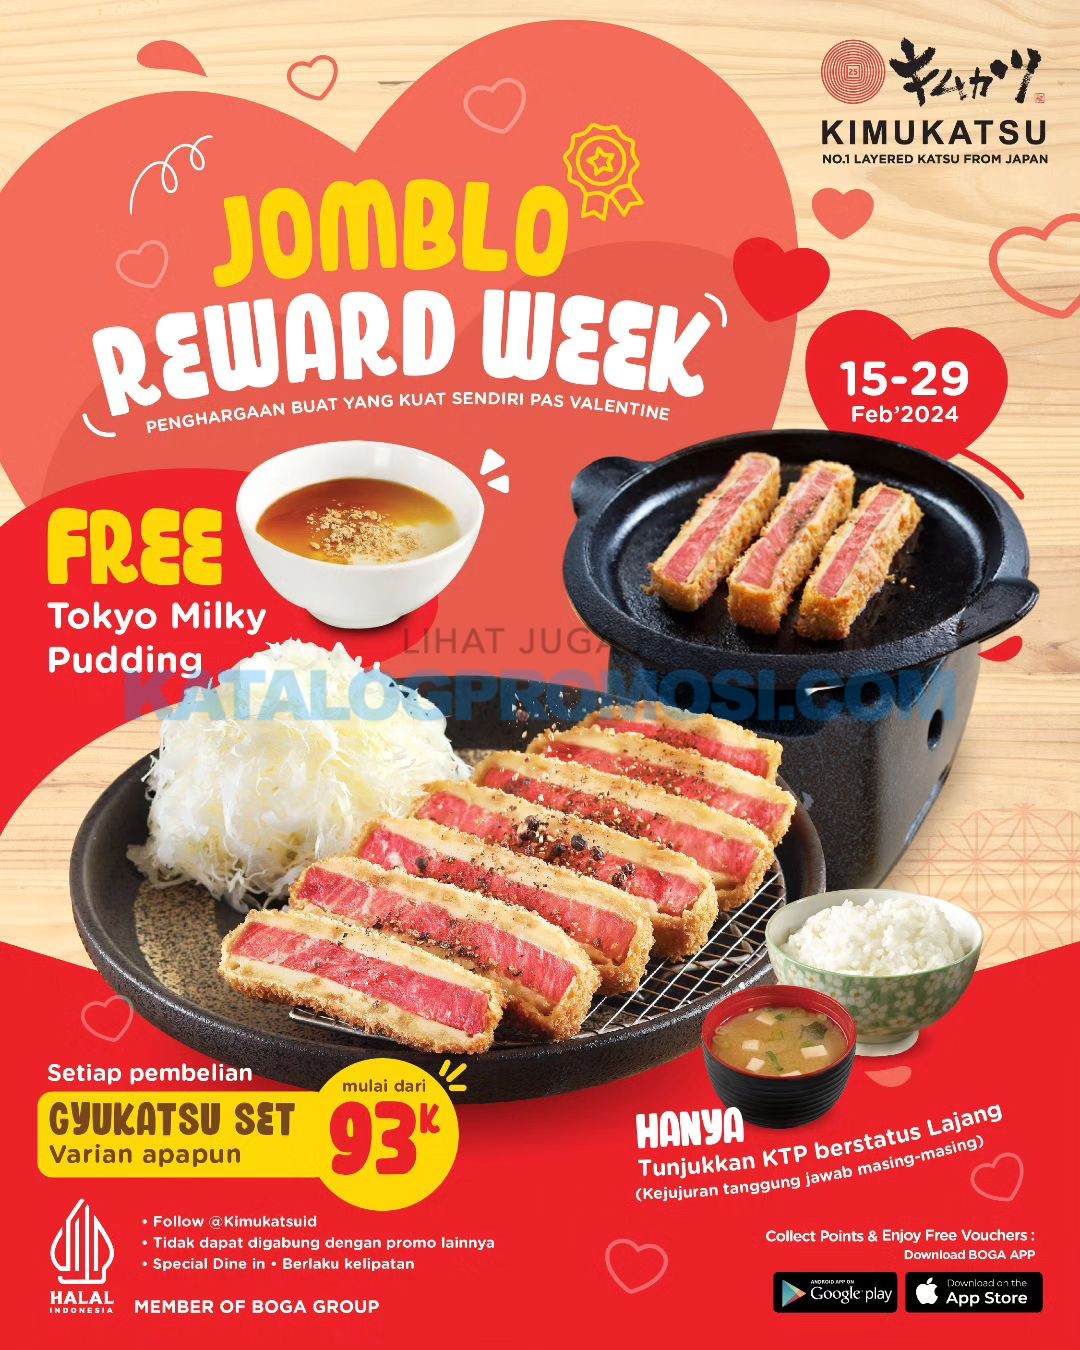 Promo KIMUKATSU JOMBLO WEEK - FREE Tokyo Milky Pudding berlaku tanggal 15-29 Februari 2024